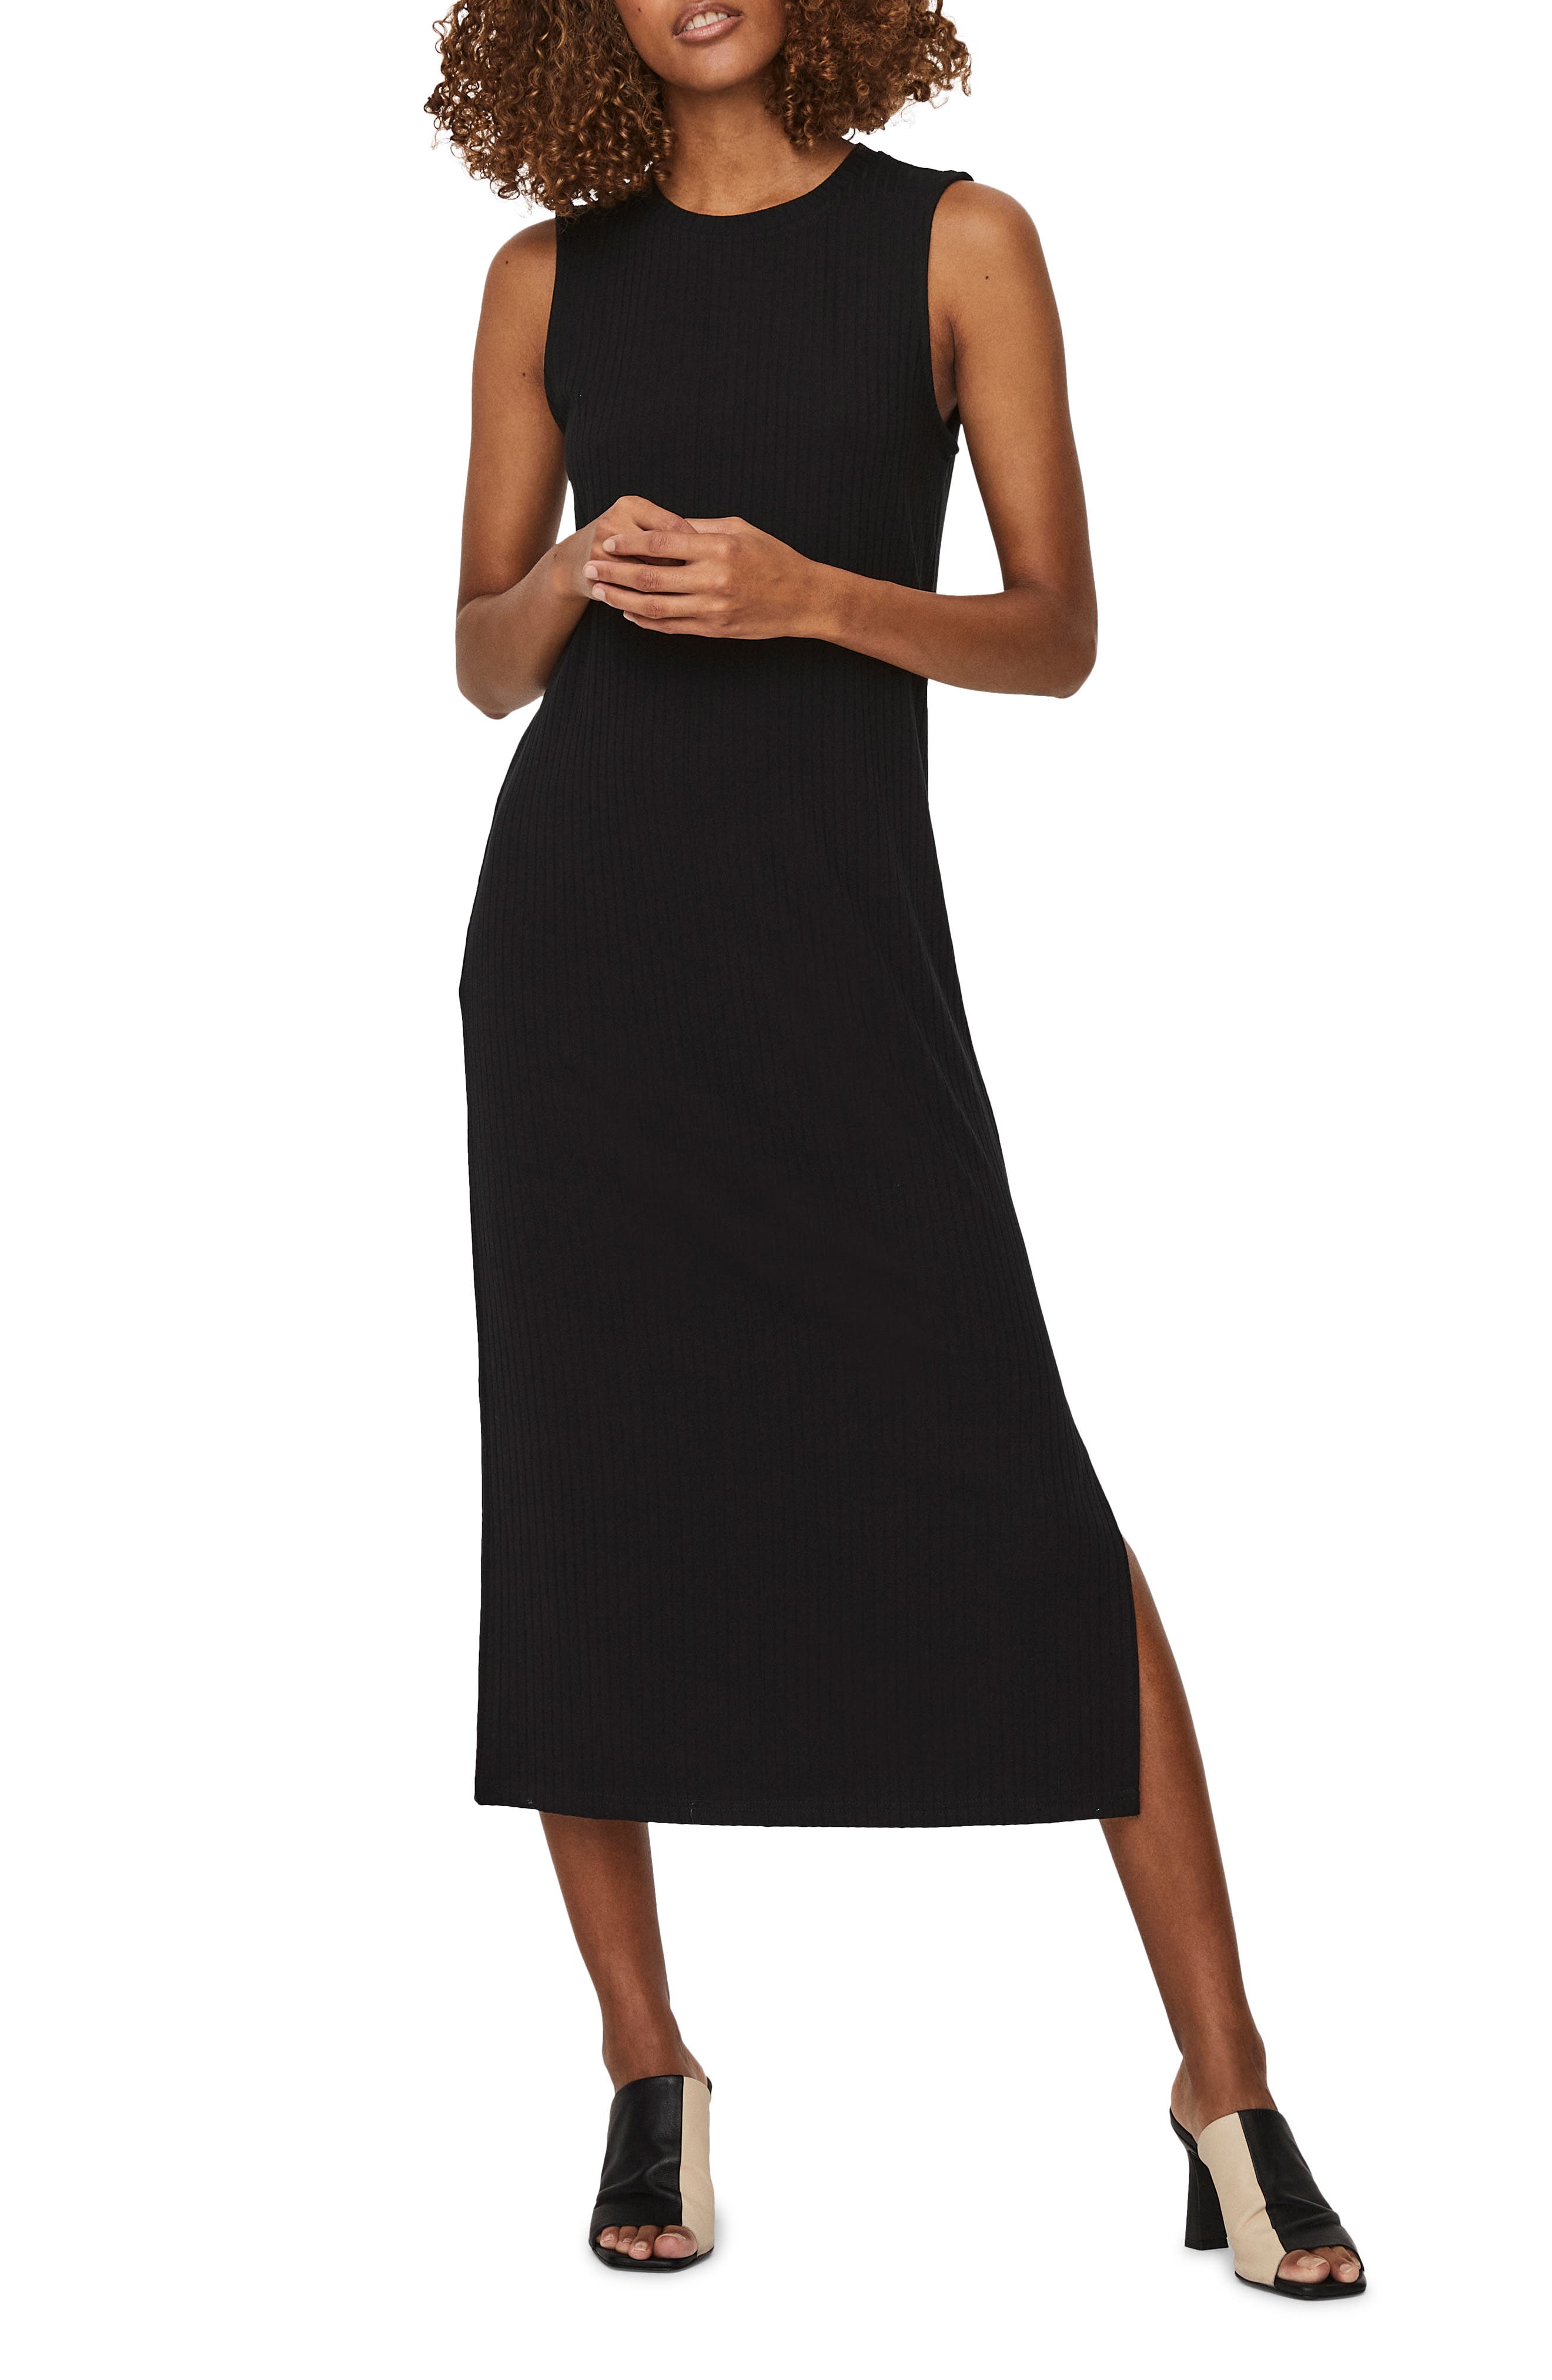 Buy > black knit tank dress > in stock